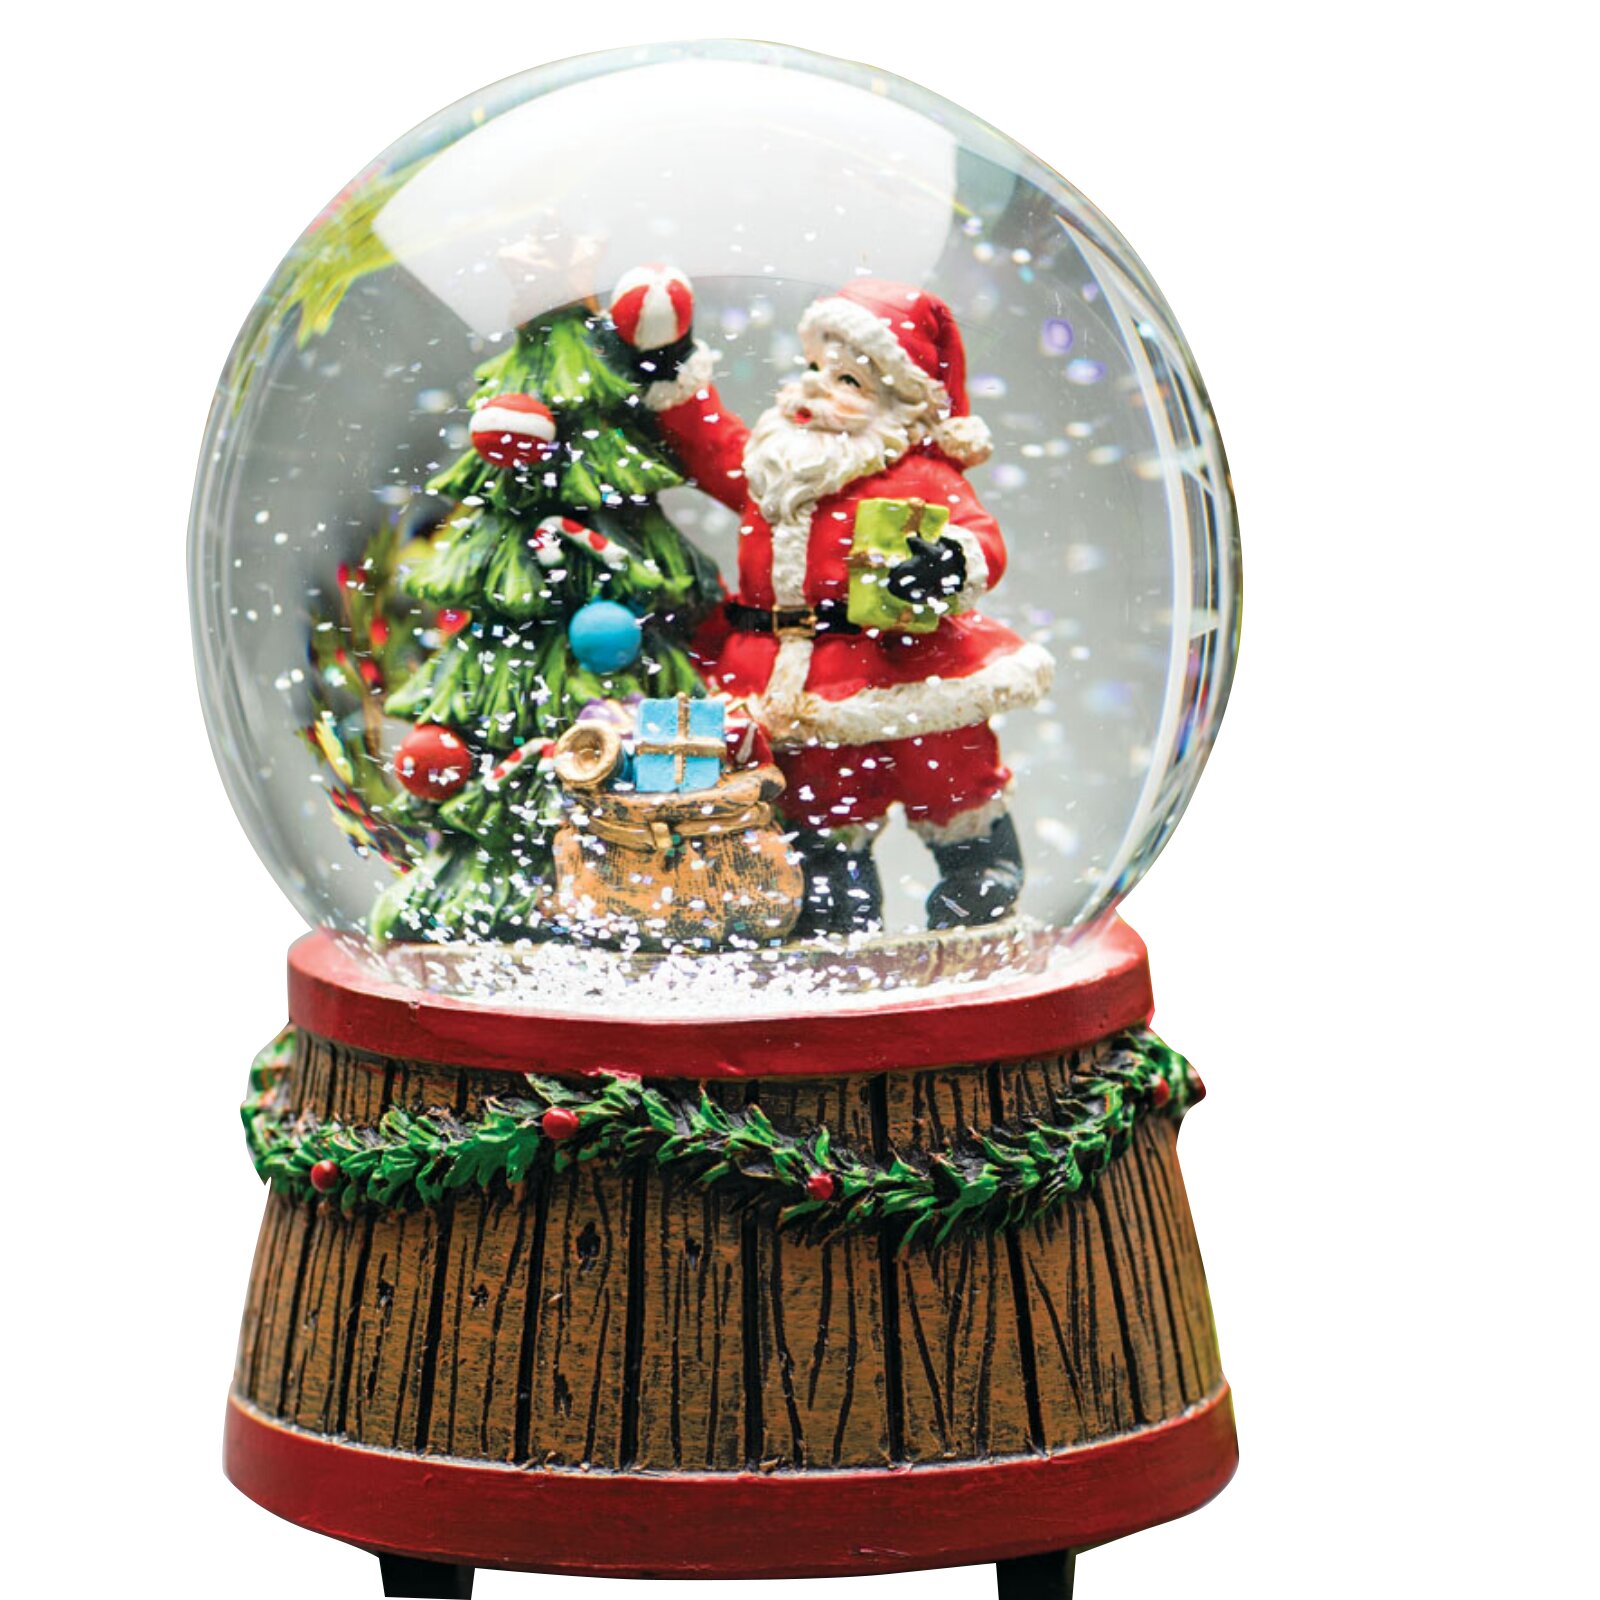 Jouet à bulles de Noël exquis fait à la main à partir de perles, également  connu sous le nom de globe de Noël ou ampoule de Noël, fait partie du décor  de